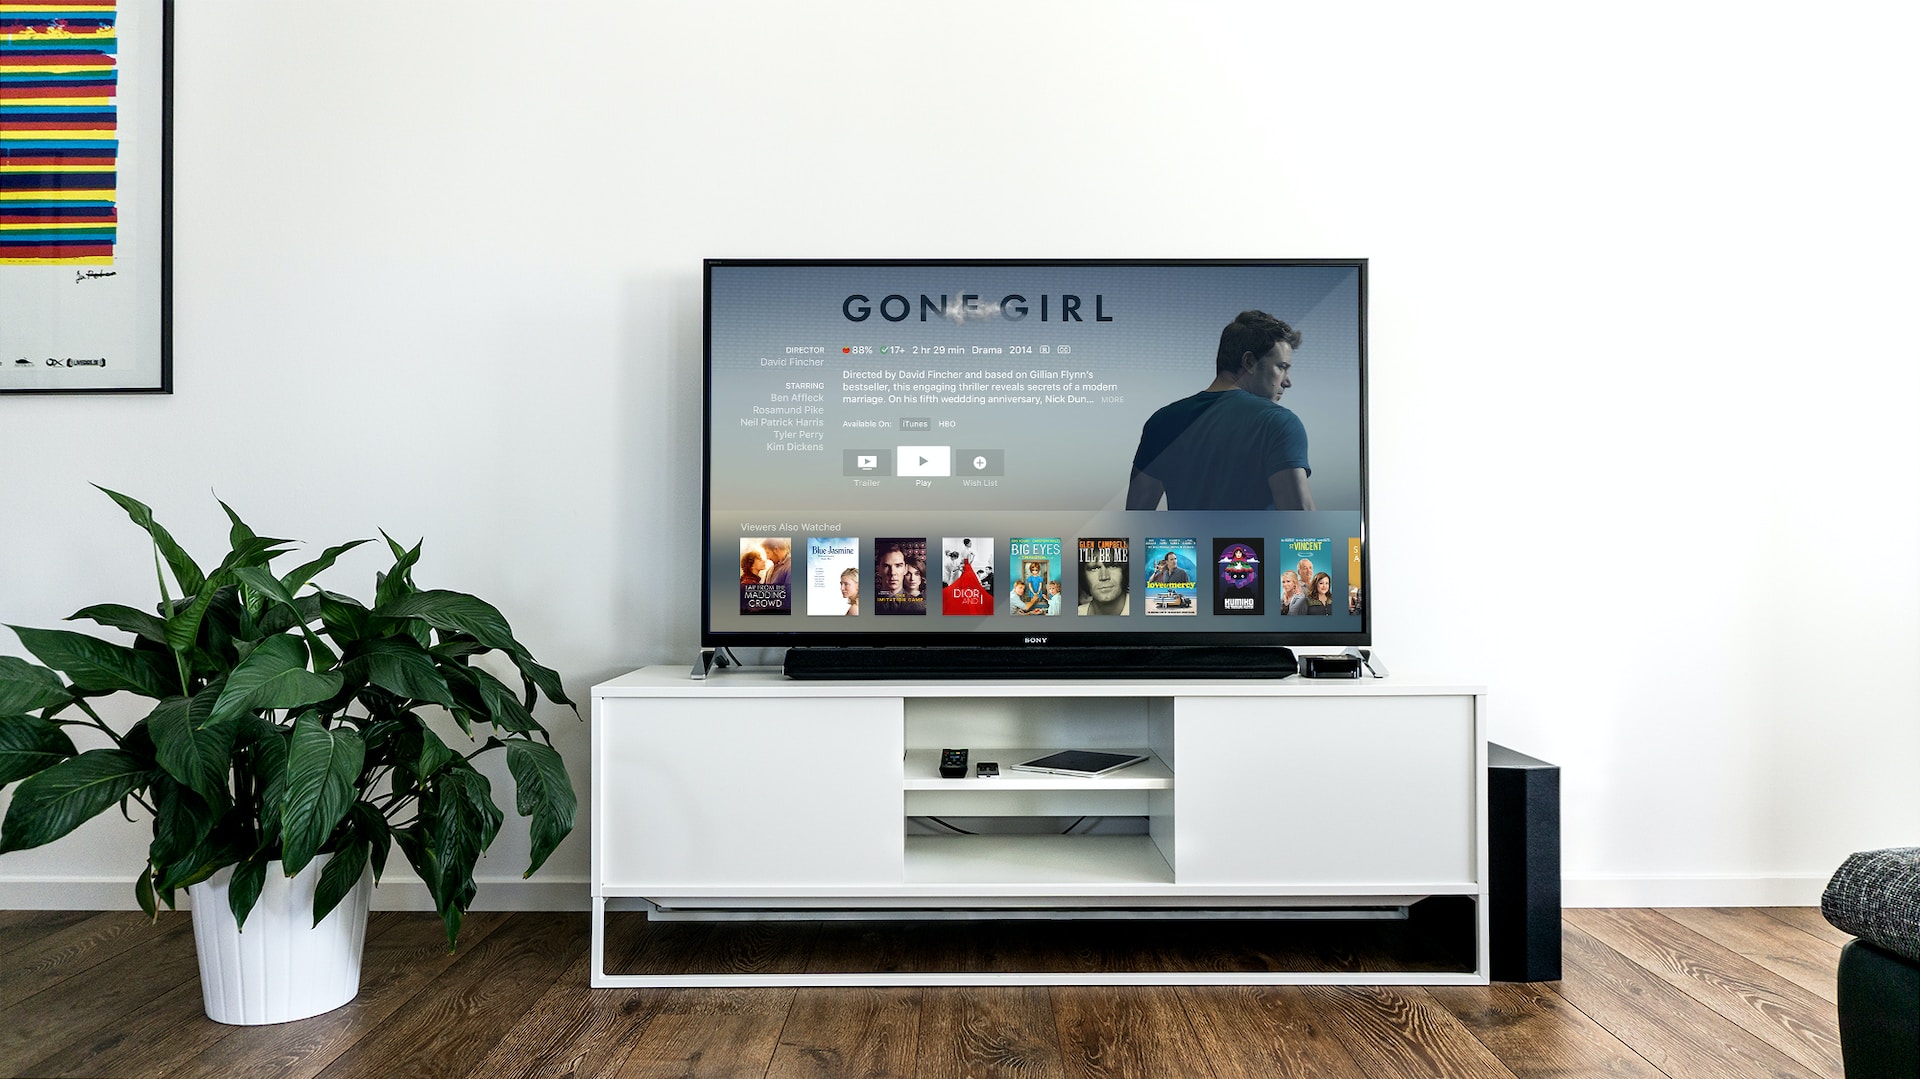 televisie op een tv-kast in een woonkamer met daarop een streamingdienst